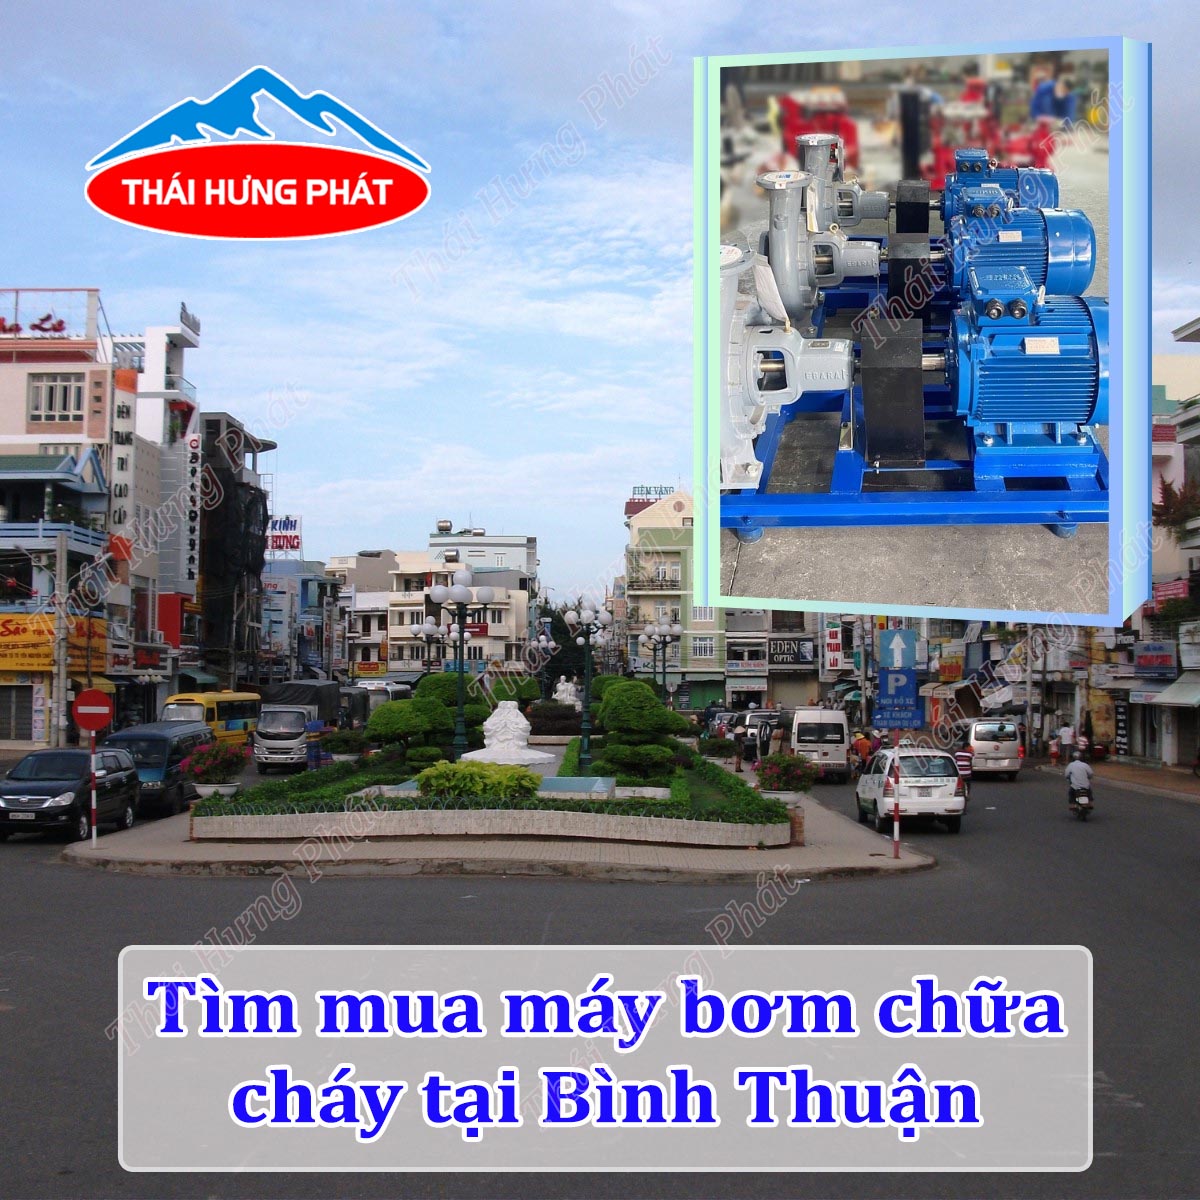 Mua máy bơm phòng cháy chữa cháy chất lượng, giá rẻ tại tỉnh Bình Thuận